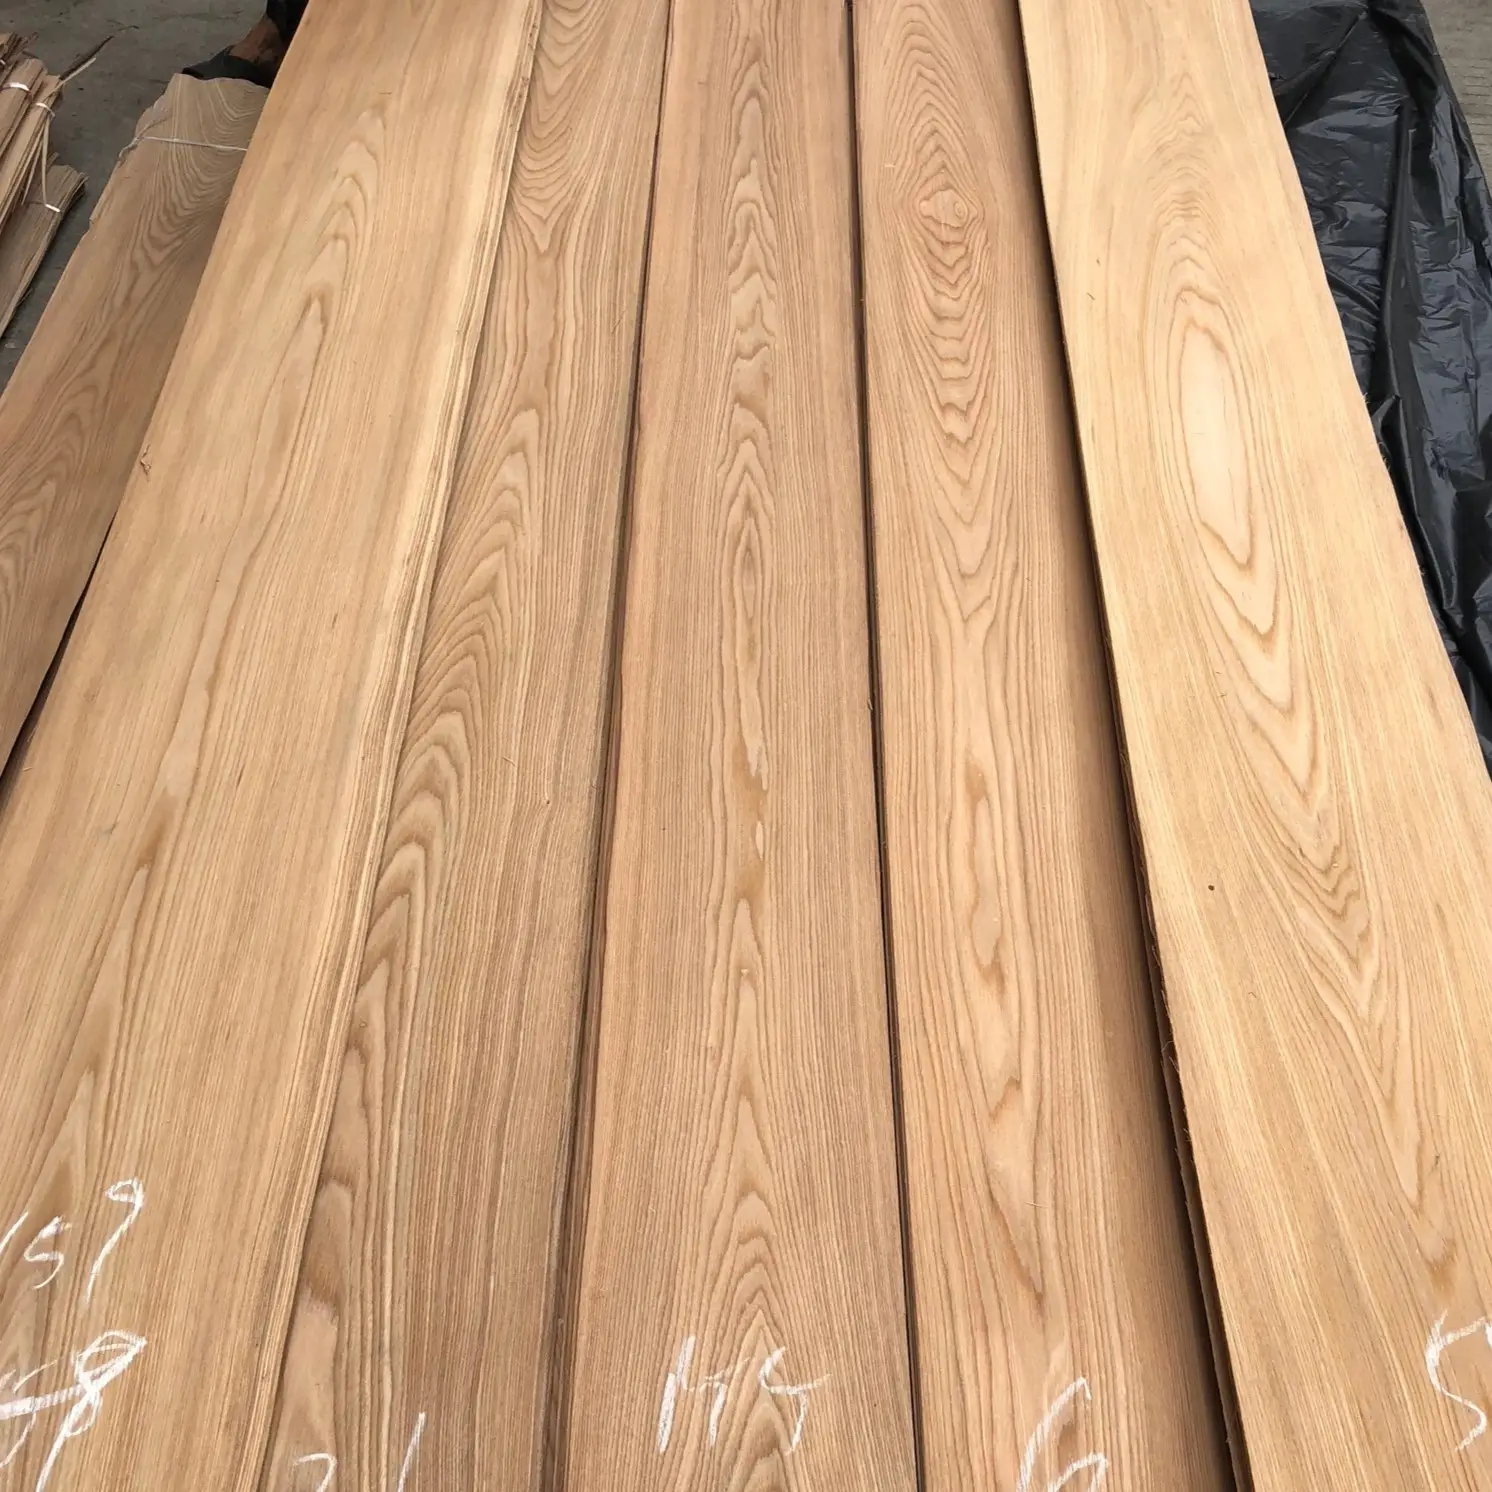 Wholesale Mountain/Straight Grain Natural Elm Veneers Wood 0.4mm Natural Elm Wood Veneer Plywood Flooring